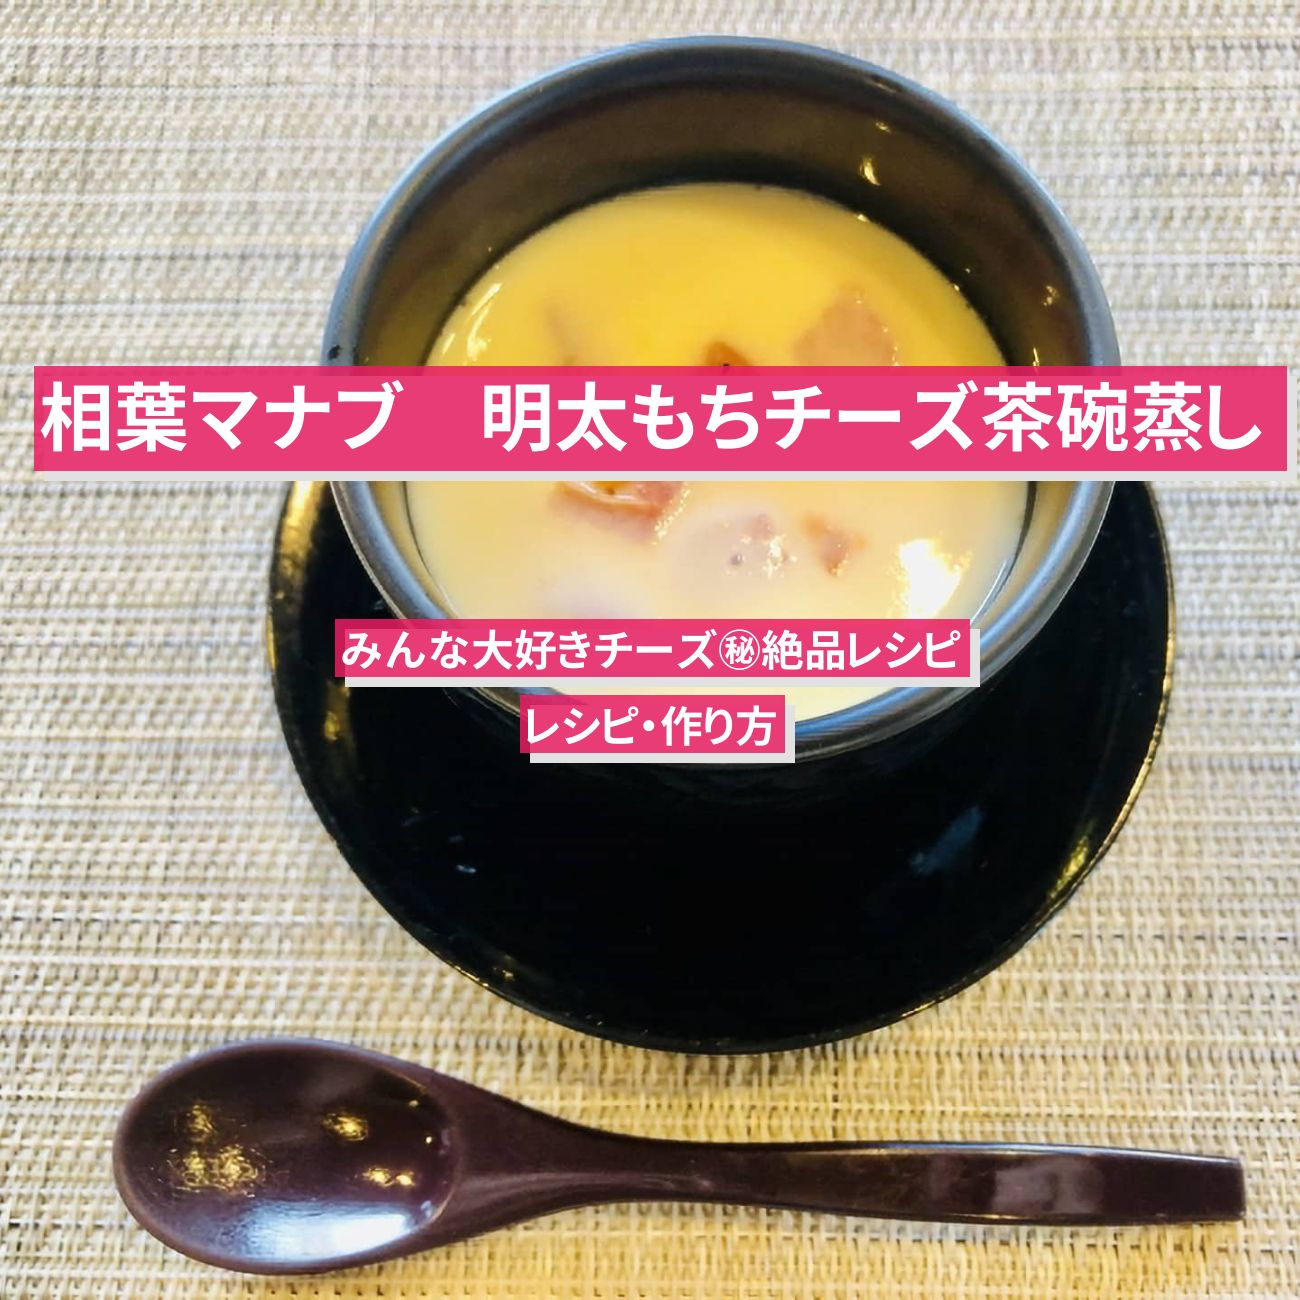 【相葉マナブ】『明太もちチーズ茶碗蒸し』すずなり村田さんのレシピ・作り方